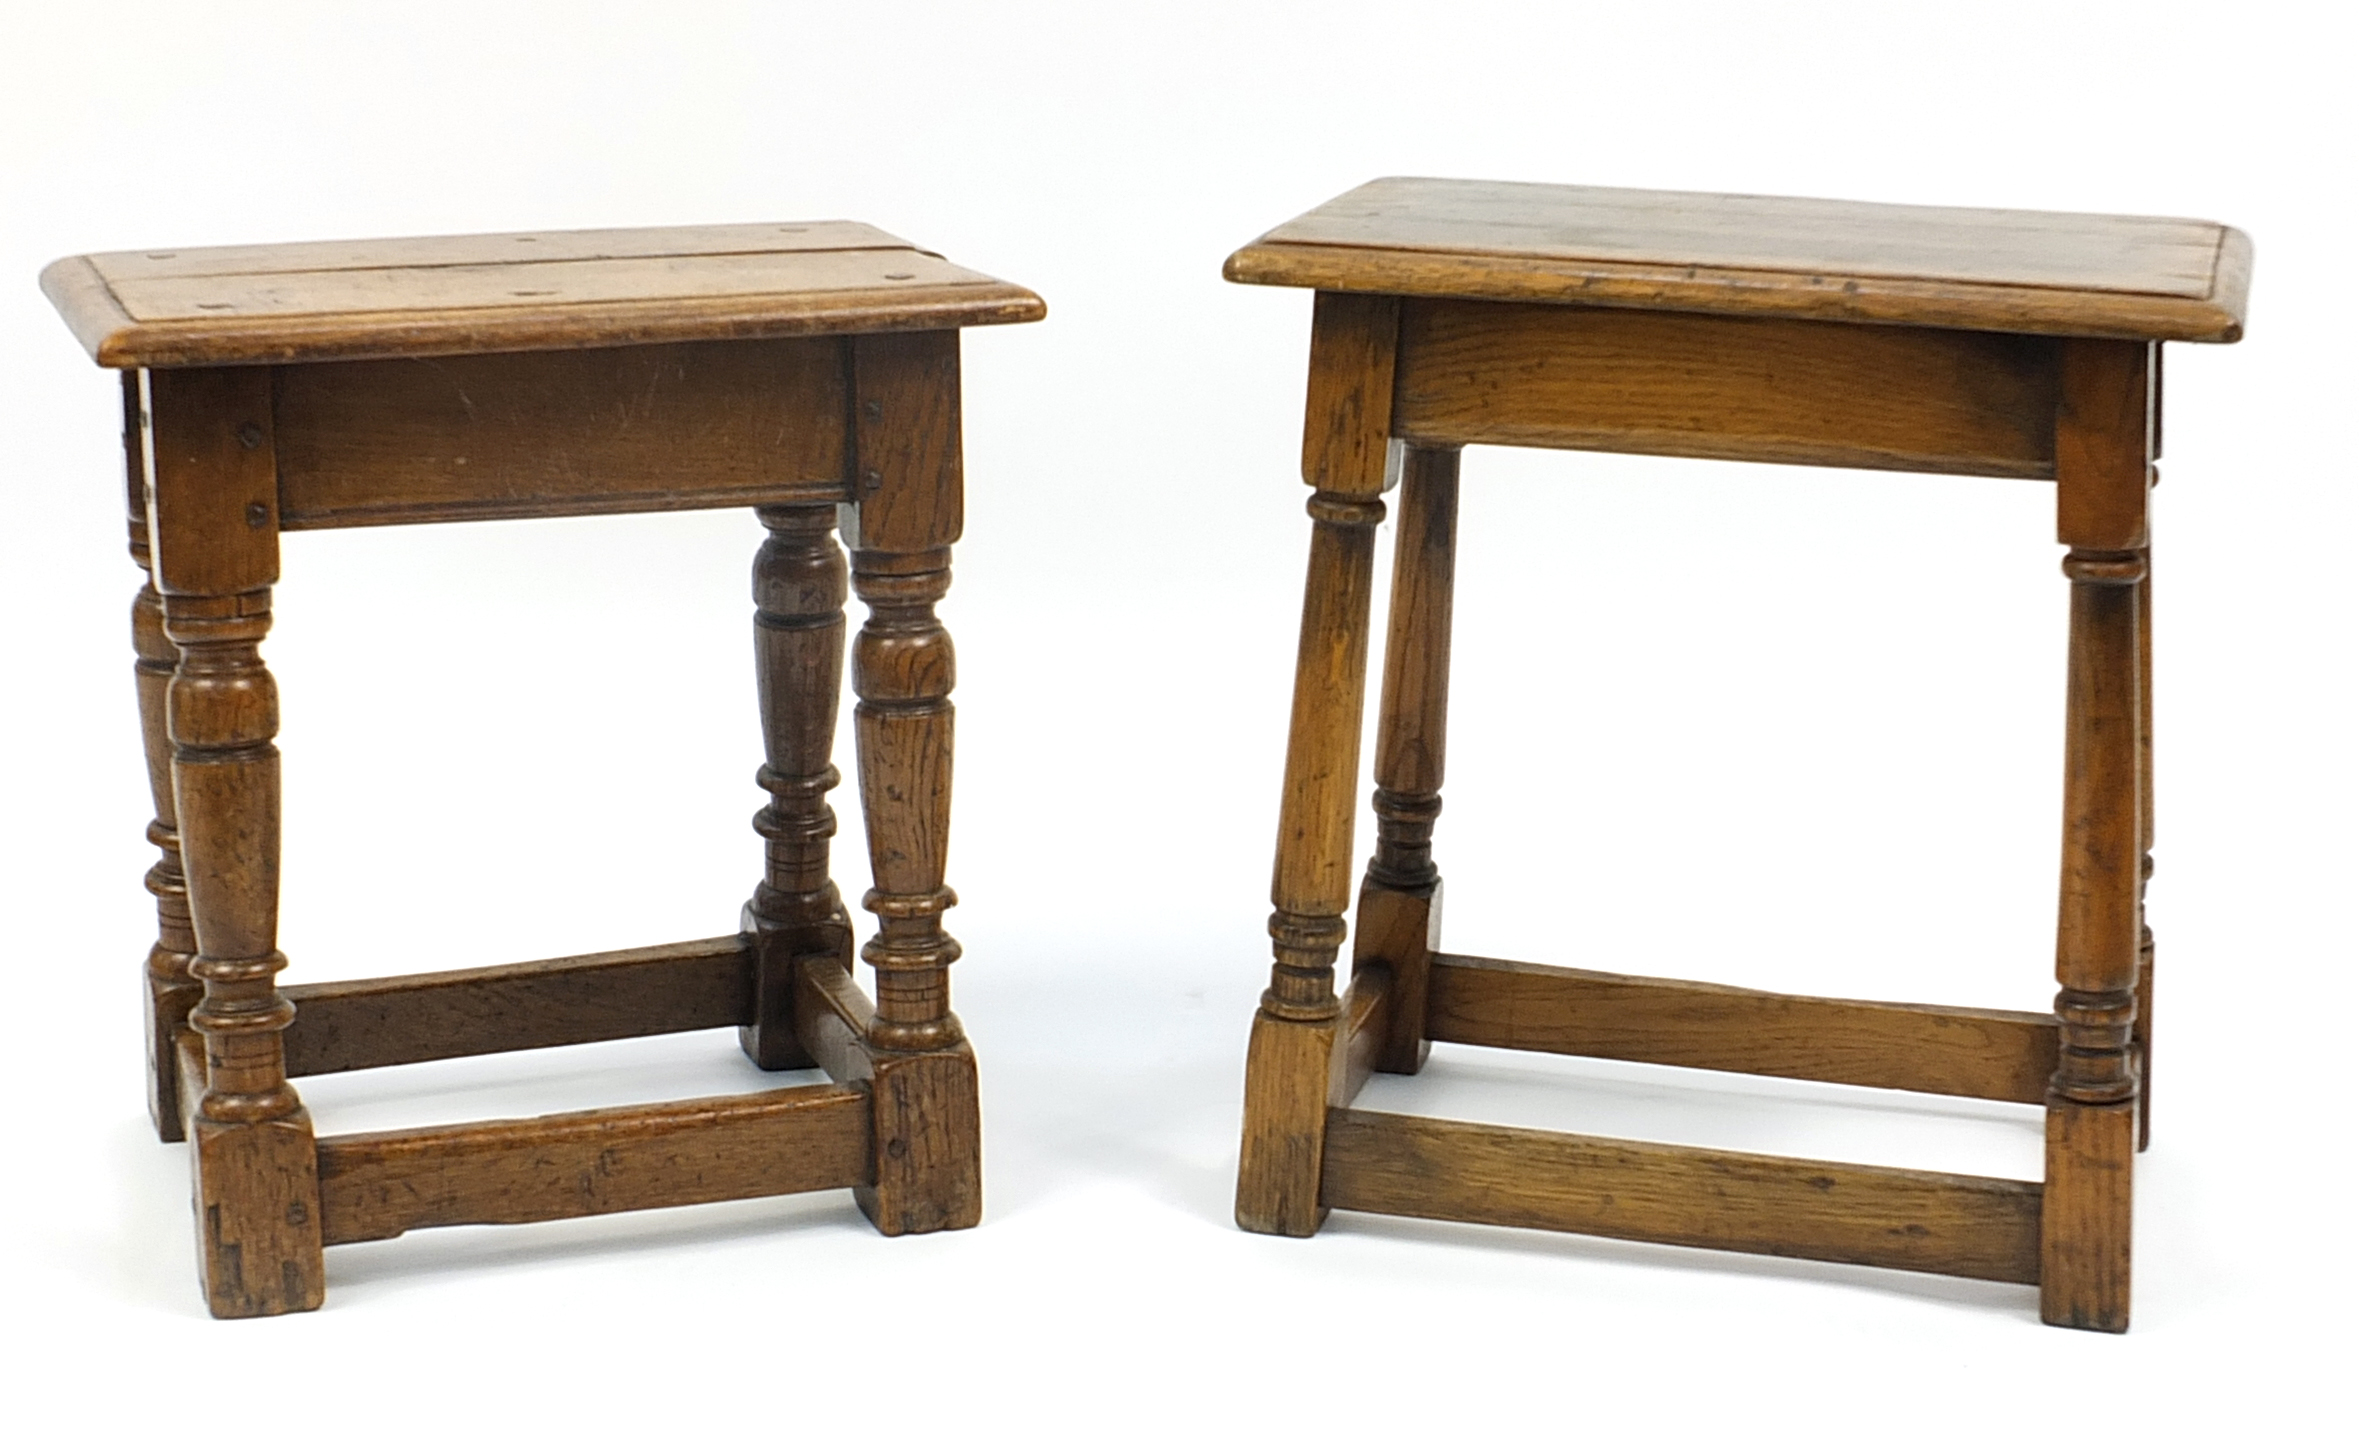 Two antique oak stools, the largest 49cm H x 45.5cm W x 27.5cm D - Image 2 of 3